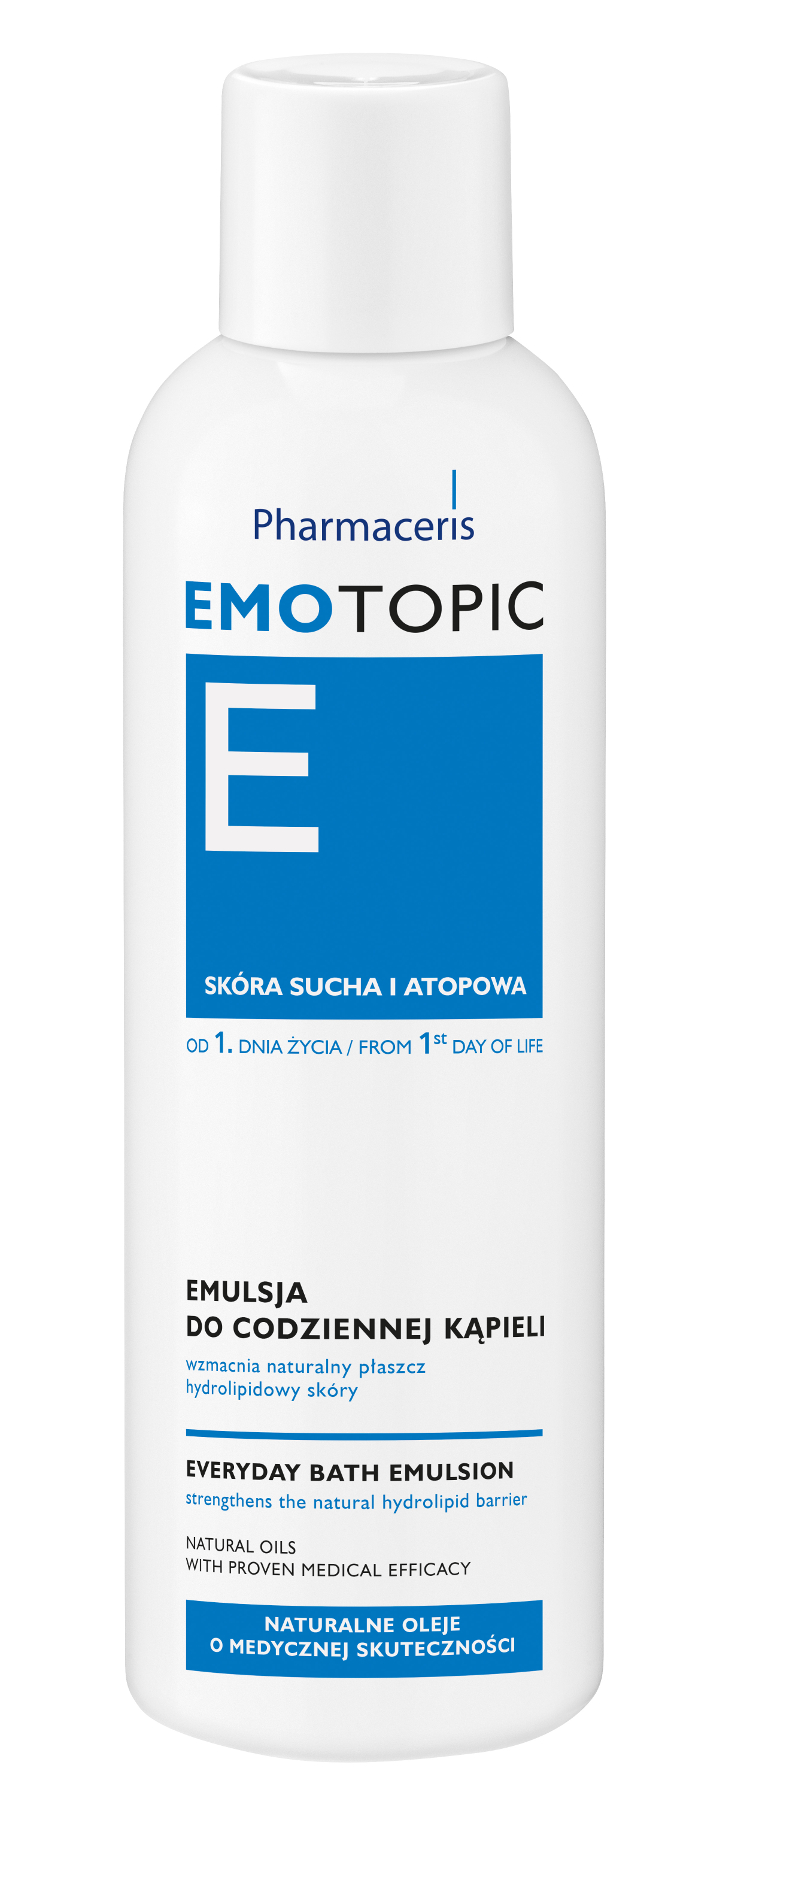 Pharmaceris - EMOTOPIC- Emulsja do codziennej kąpieli